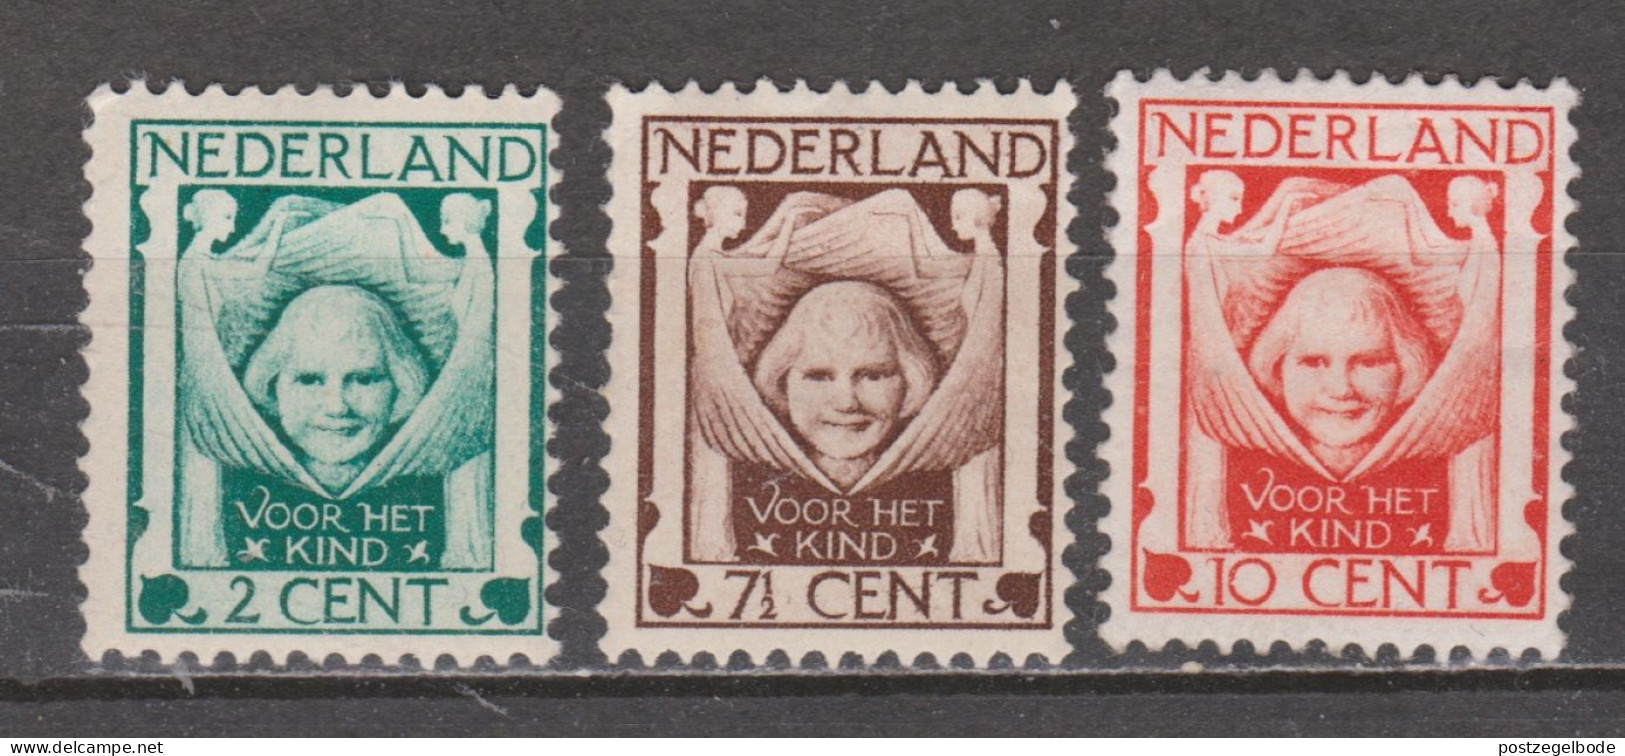 Nederland Netherlands Pays Bas 141 142 143 MNH/Postfris Kinderzegels Children Stamps Timbres D'enfants 1924 - Unused Stamps